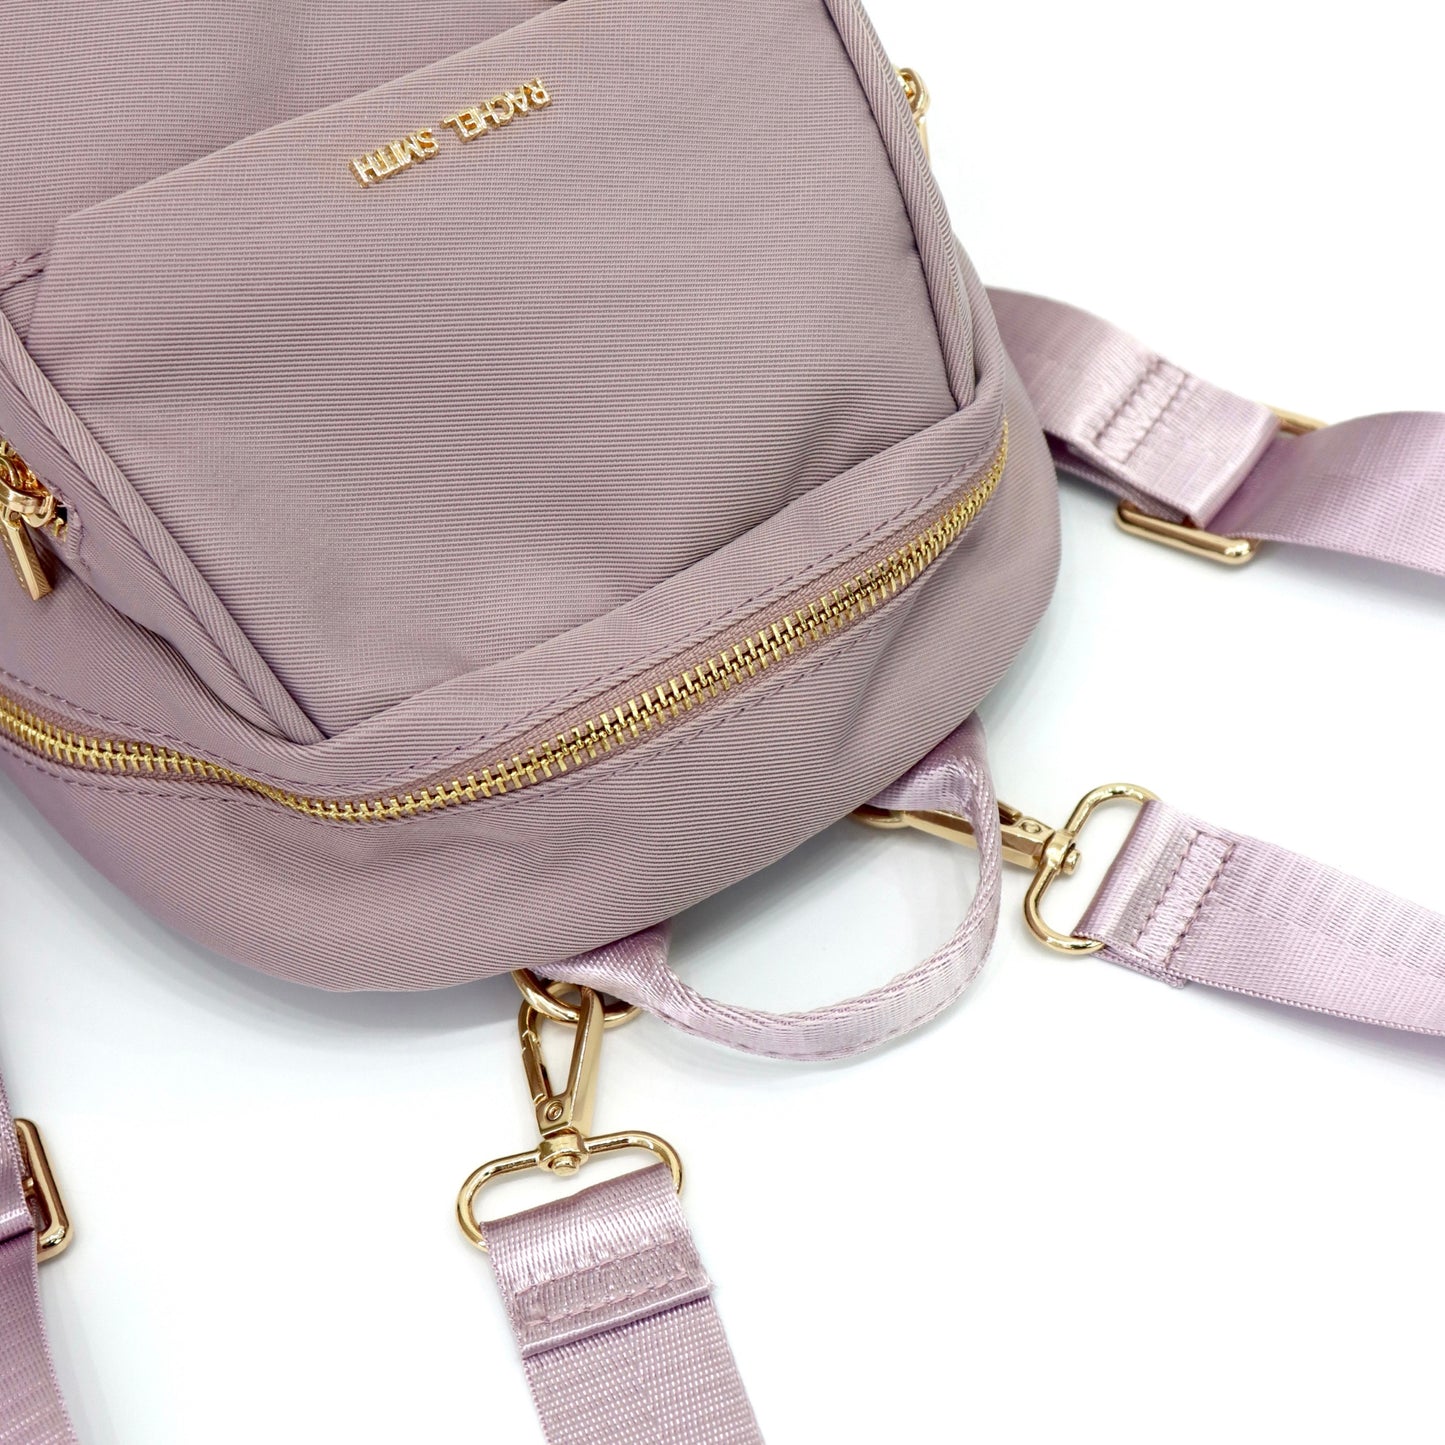 Daisy Mini Nylon Backpack